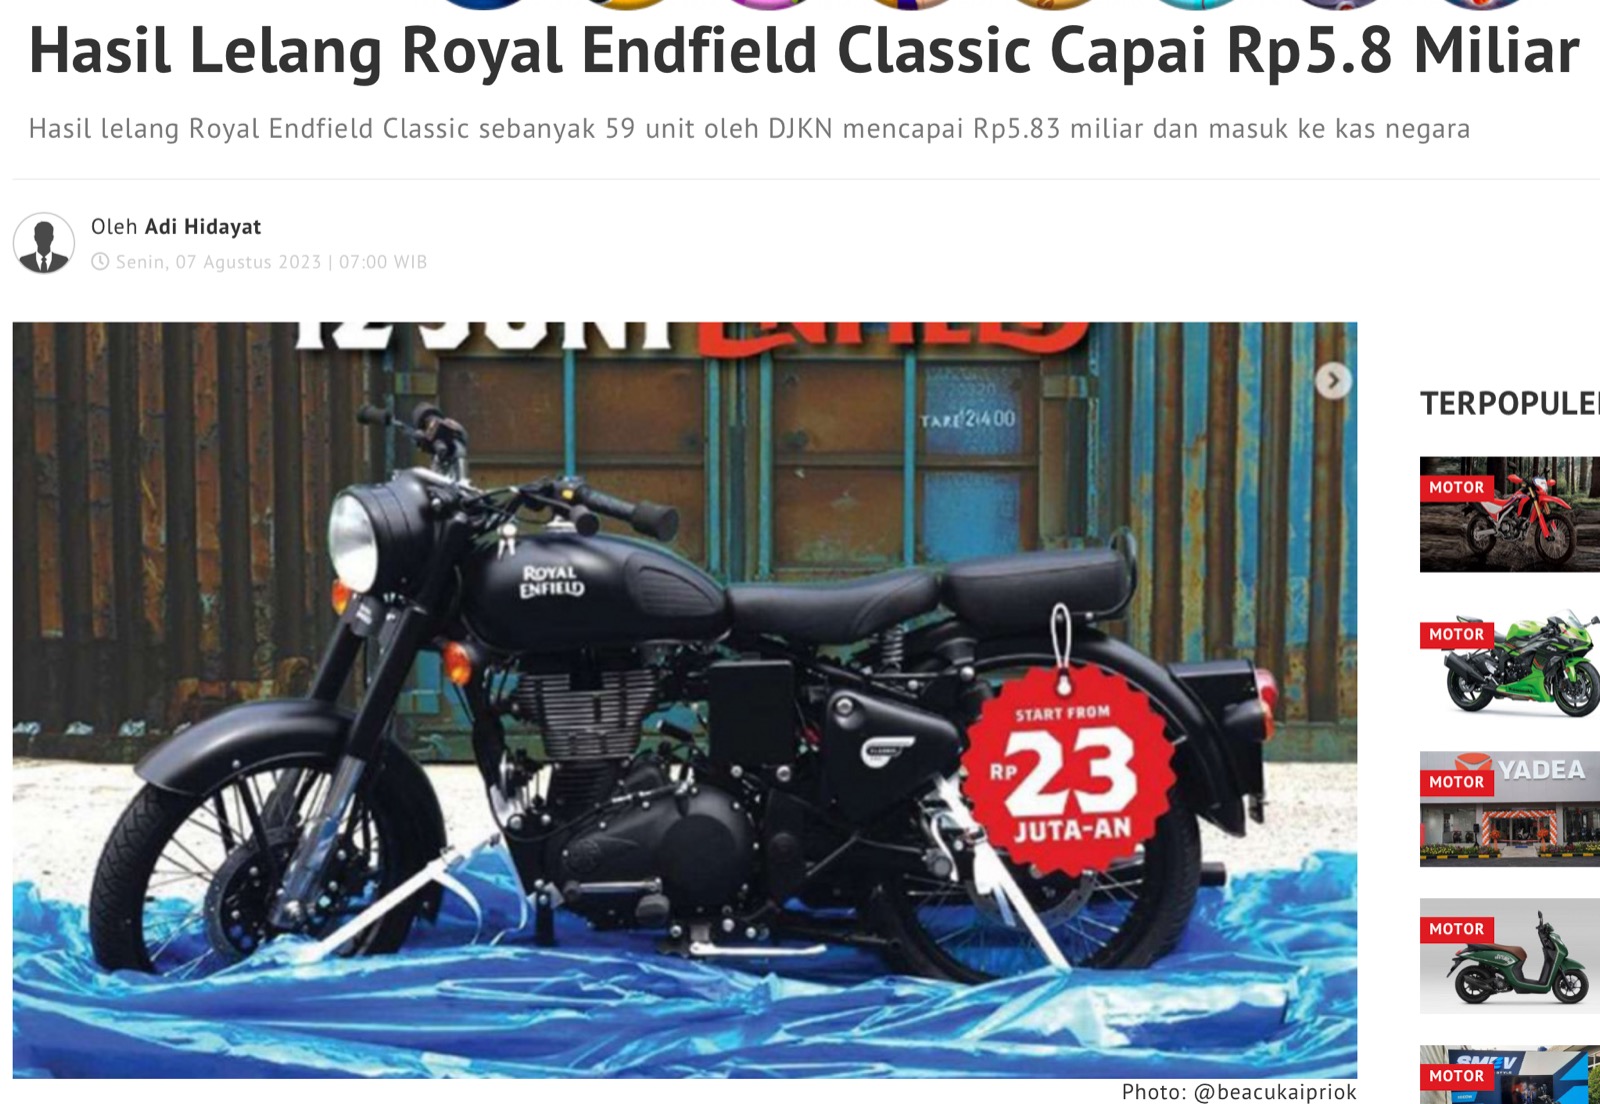 Hasil Lelang Royal Endfield Classic Capai Rp5.8 Miliar